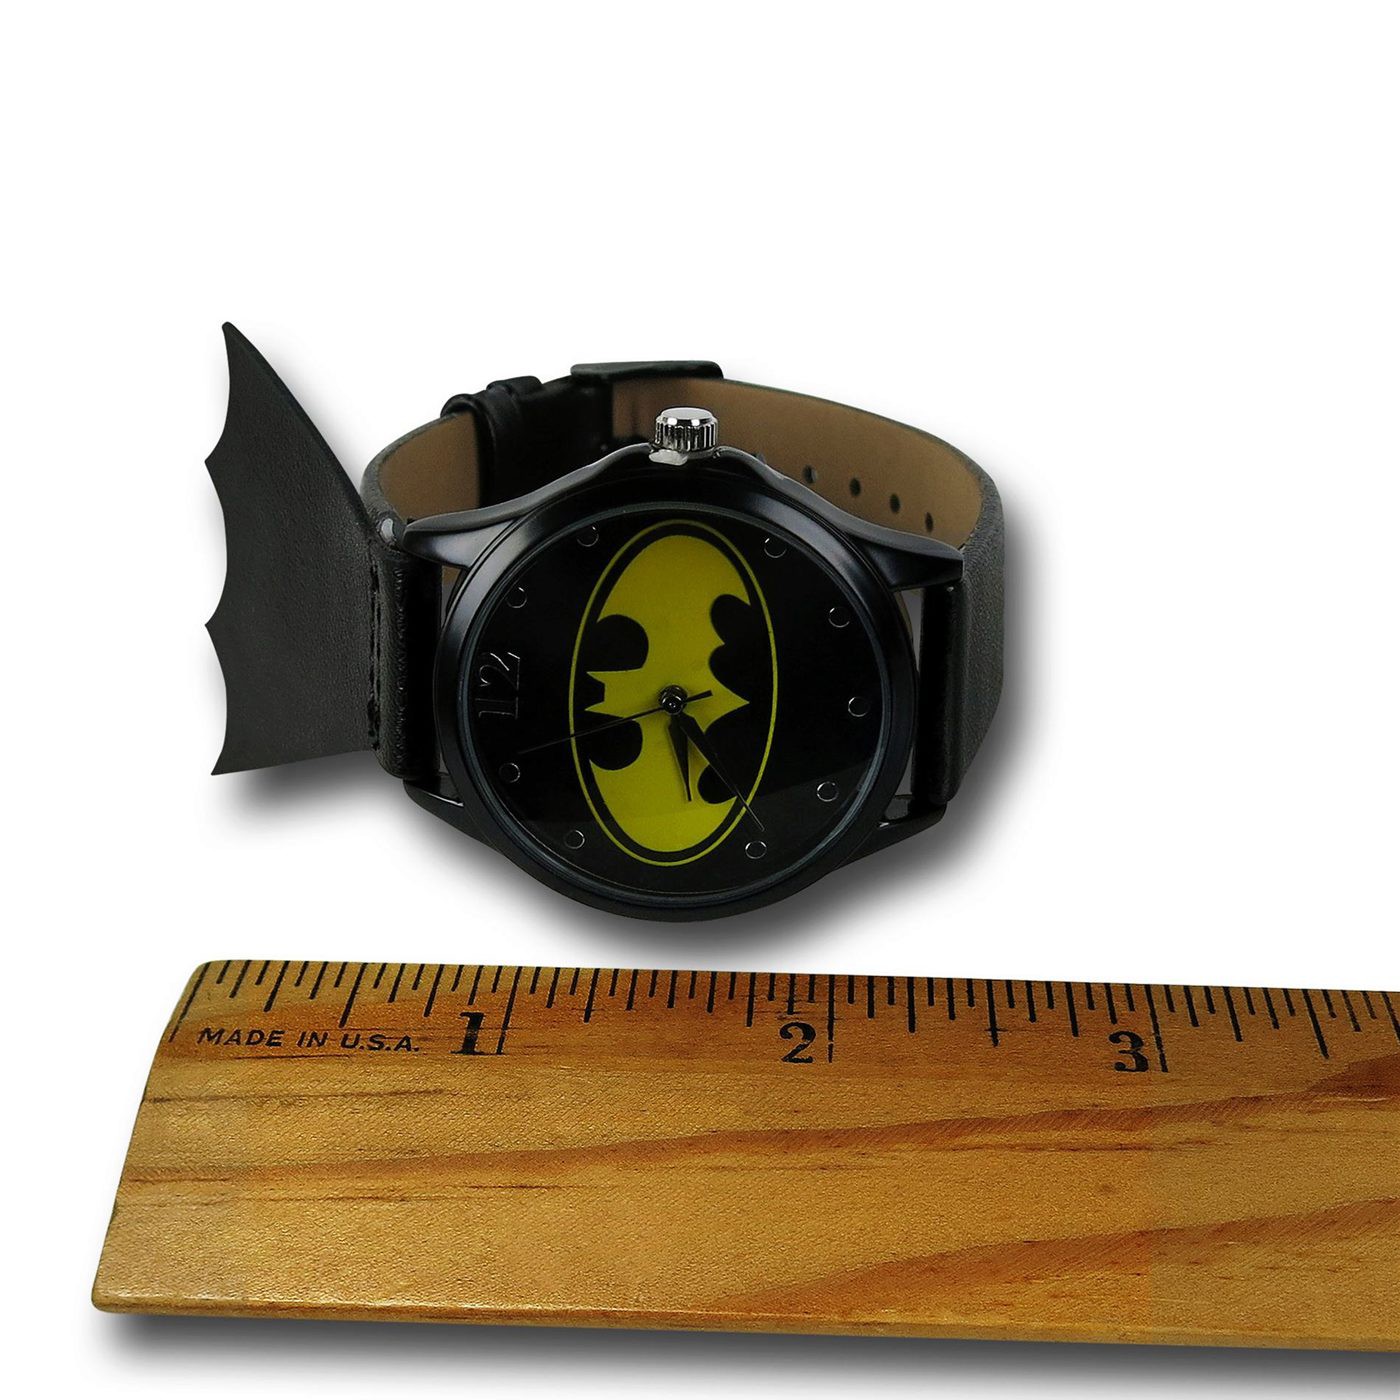 Batman Symbol Caped Watch